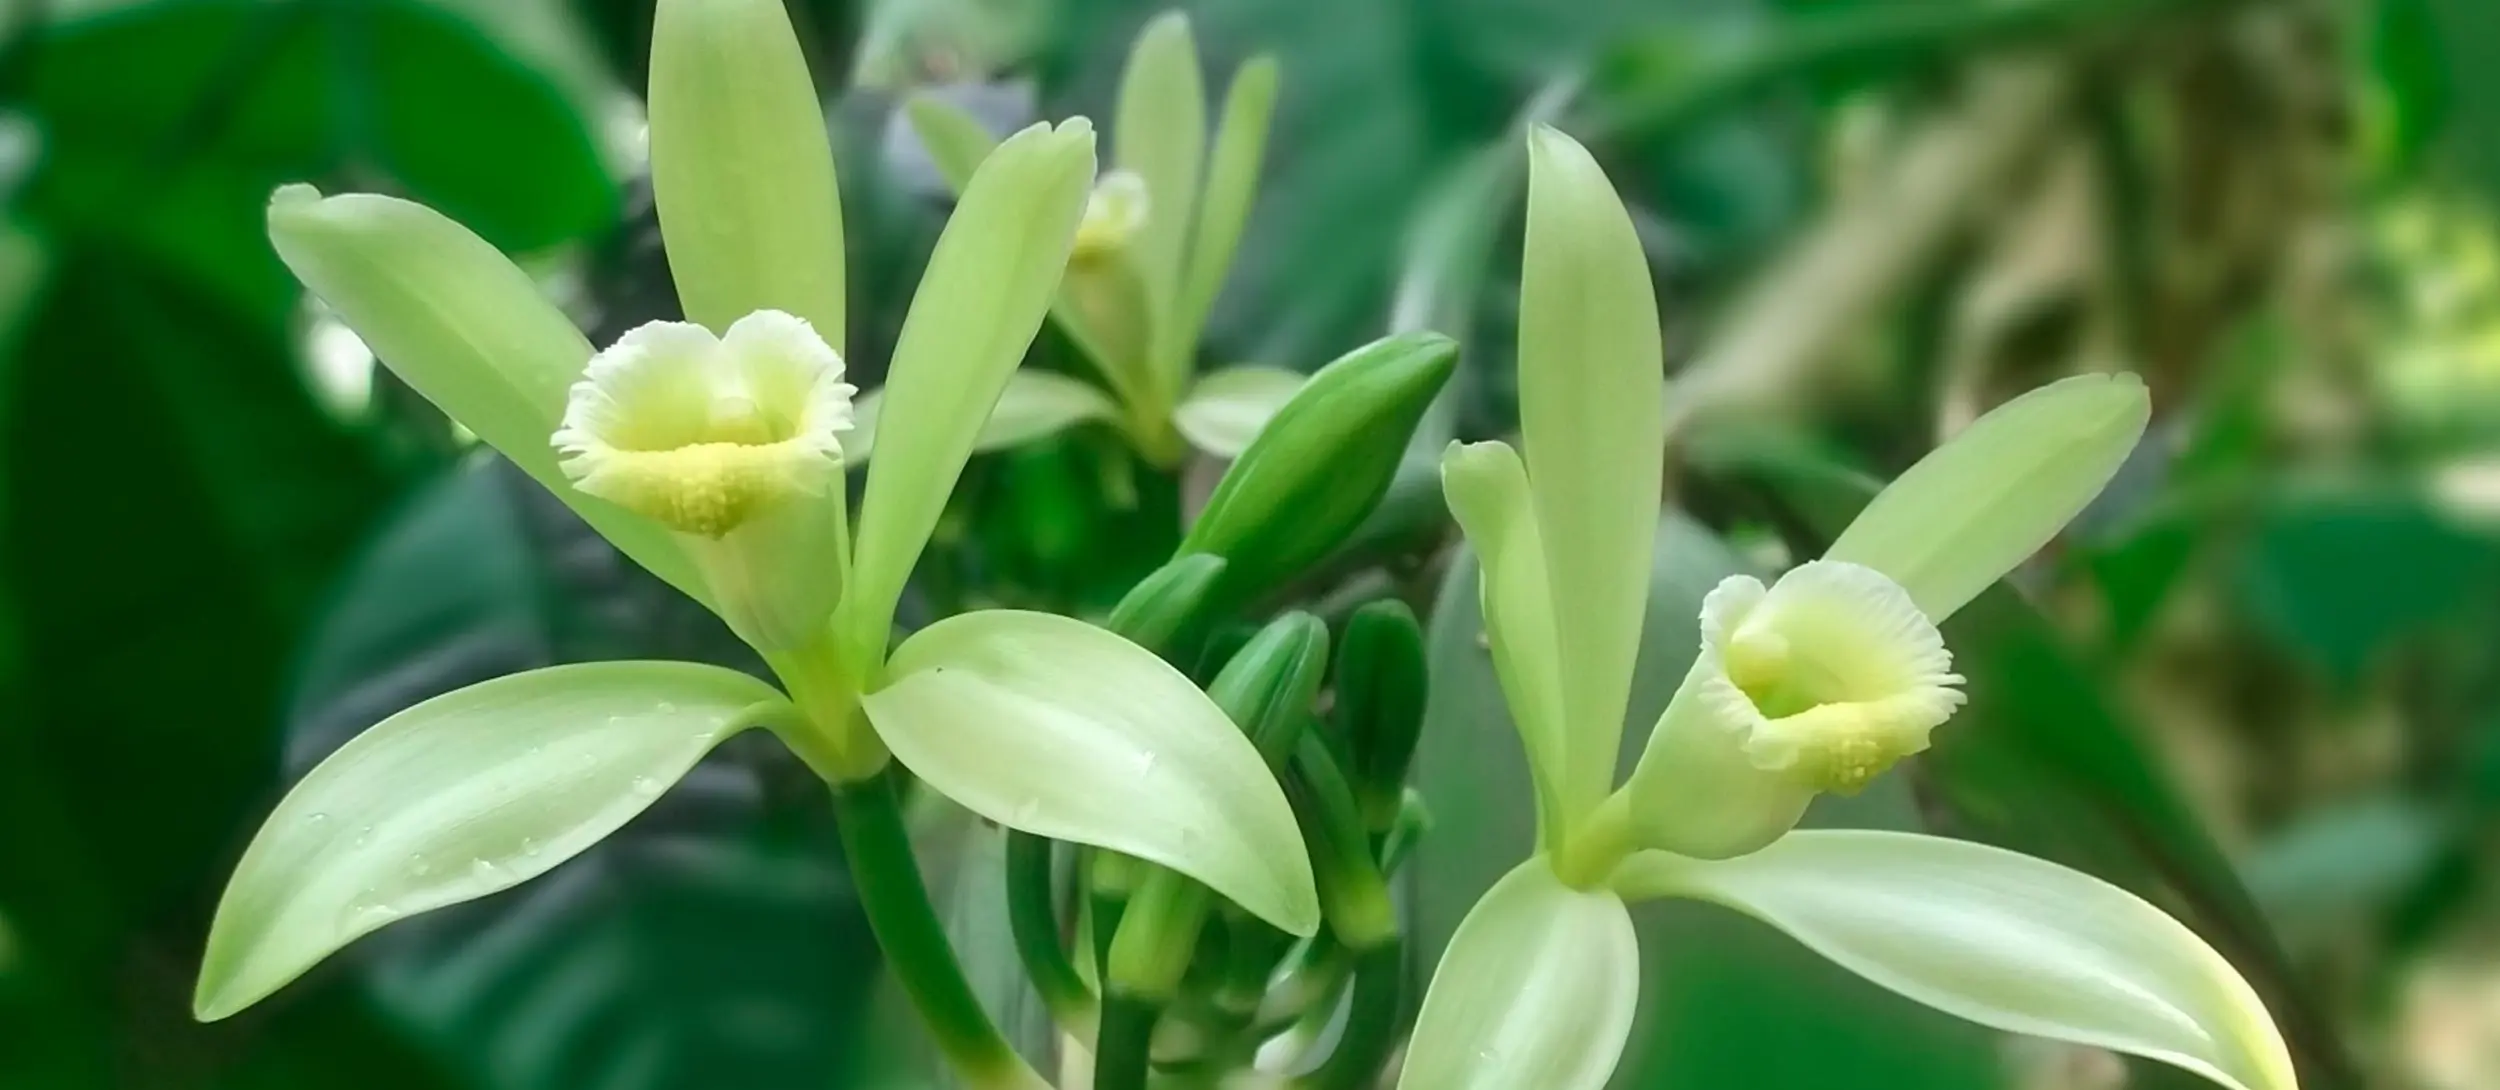 flor de la vainilla planta - Dónde se cultiva la flor de vainilla